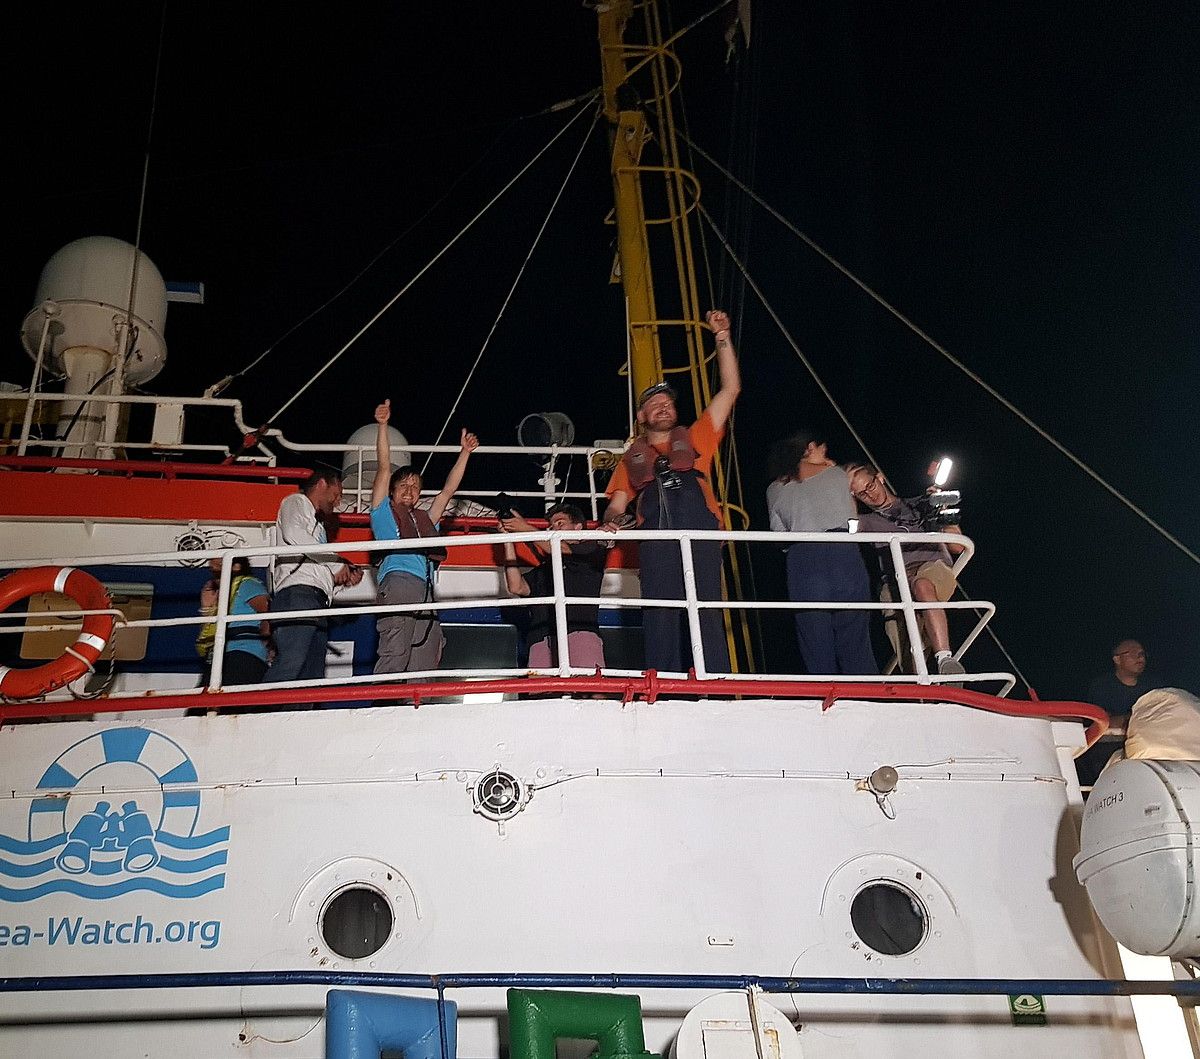 'Sea Watch' itsasontzia, iragan ekainean, Lampedusara heldu berri. ELIO DESIDERIO / EFE.